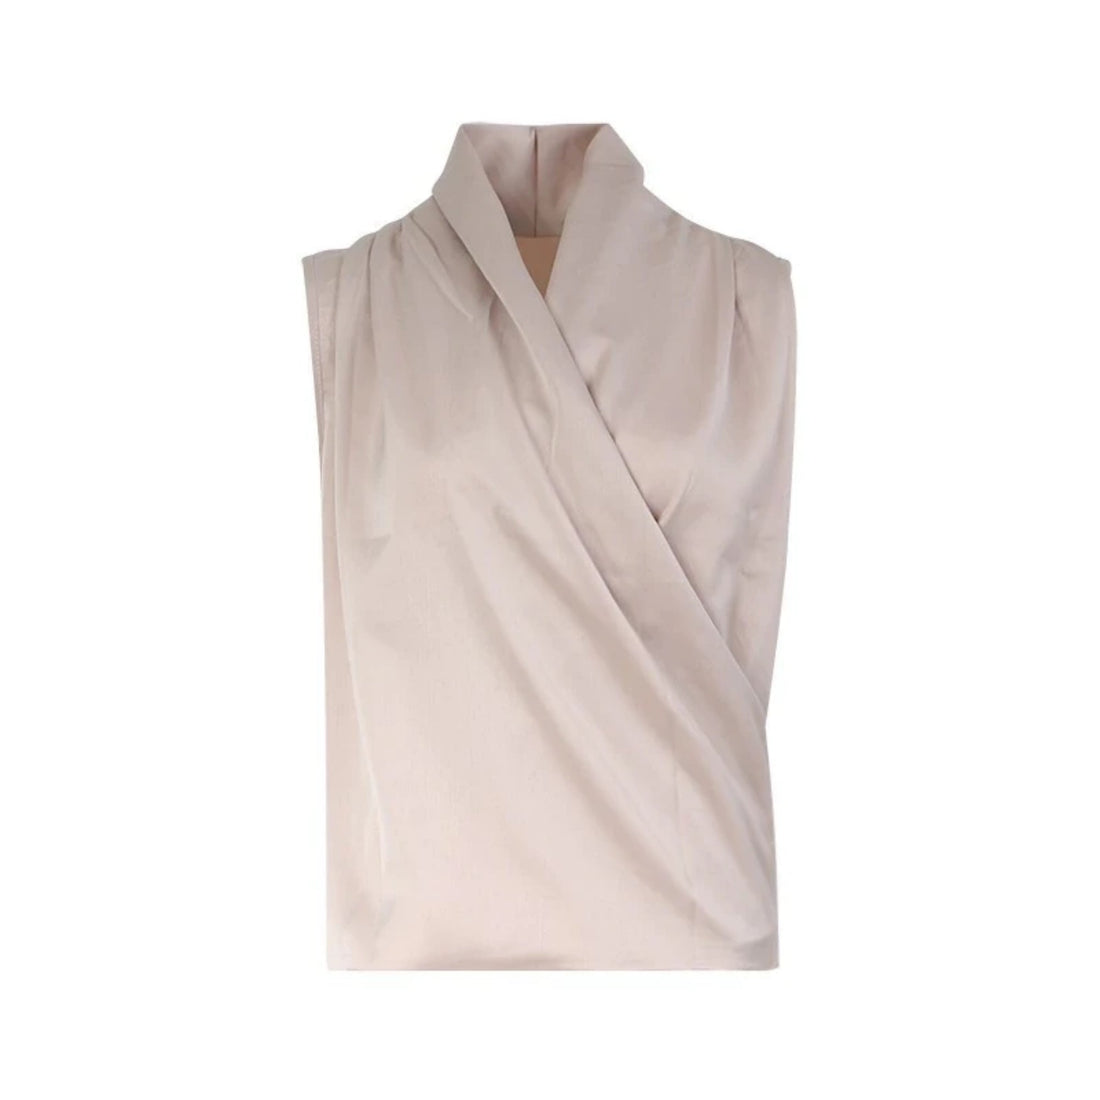 Women's Summer Polyester V-Neck Sleeveless Blouse